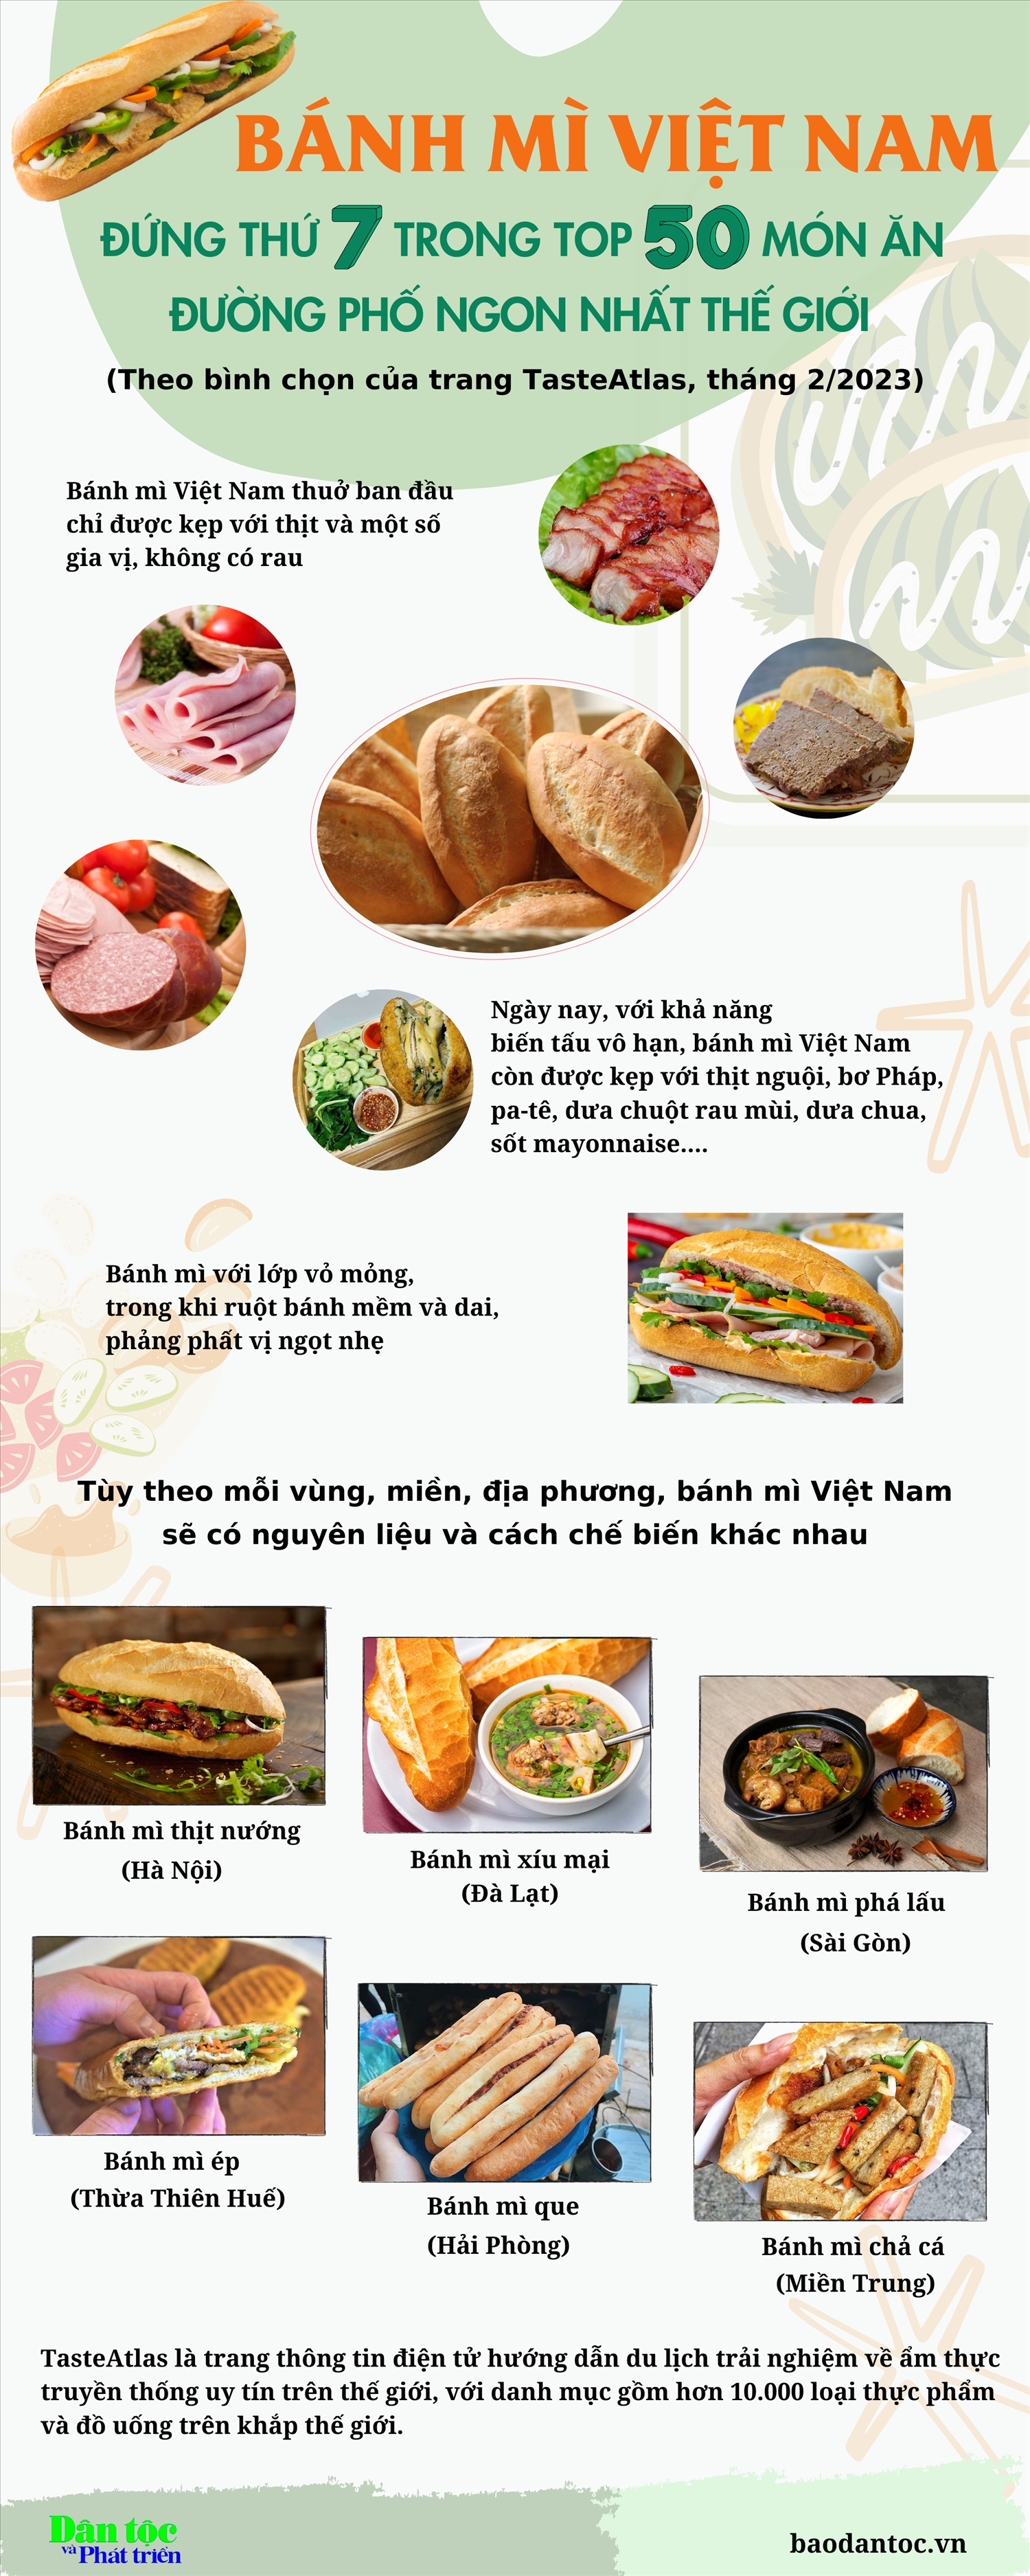 (inforgraphic) Các loại bánh mì ngon nổi tiếng của Việt Nam